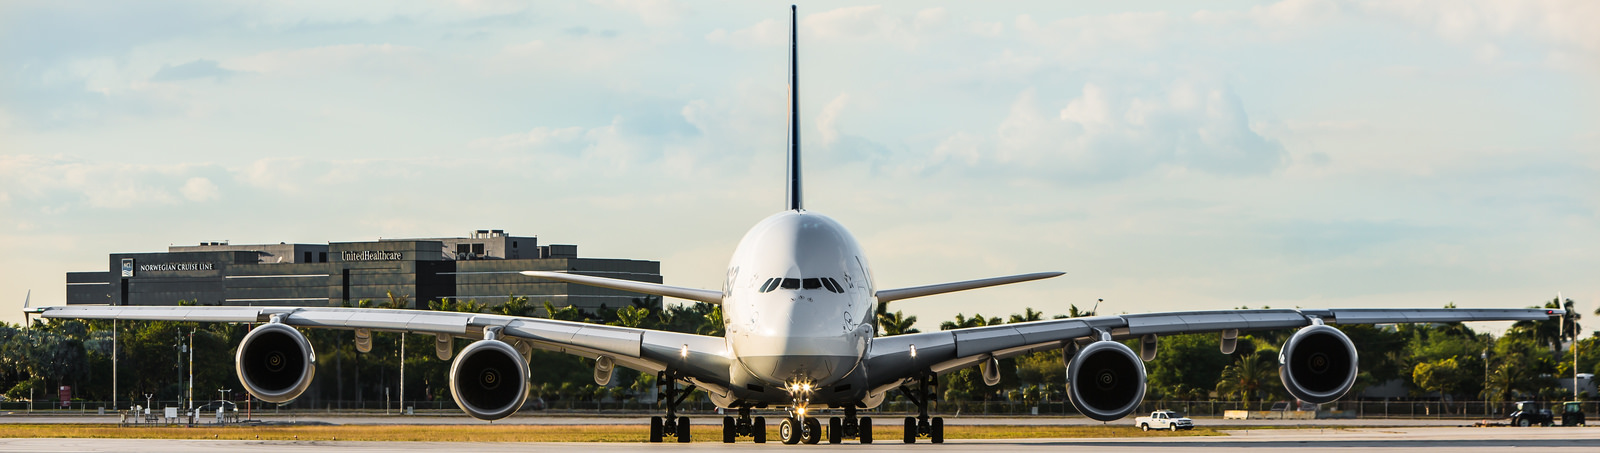 O gigantesco Airbus A380, o maior avião de passageiros do mundo